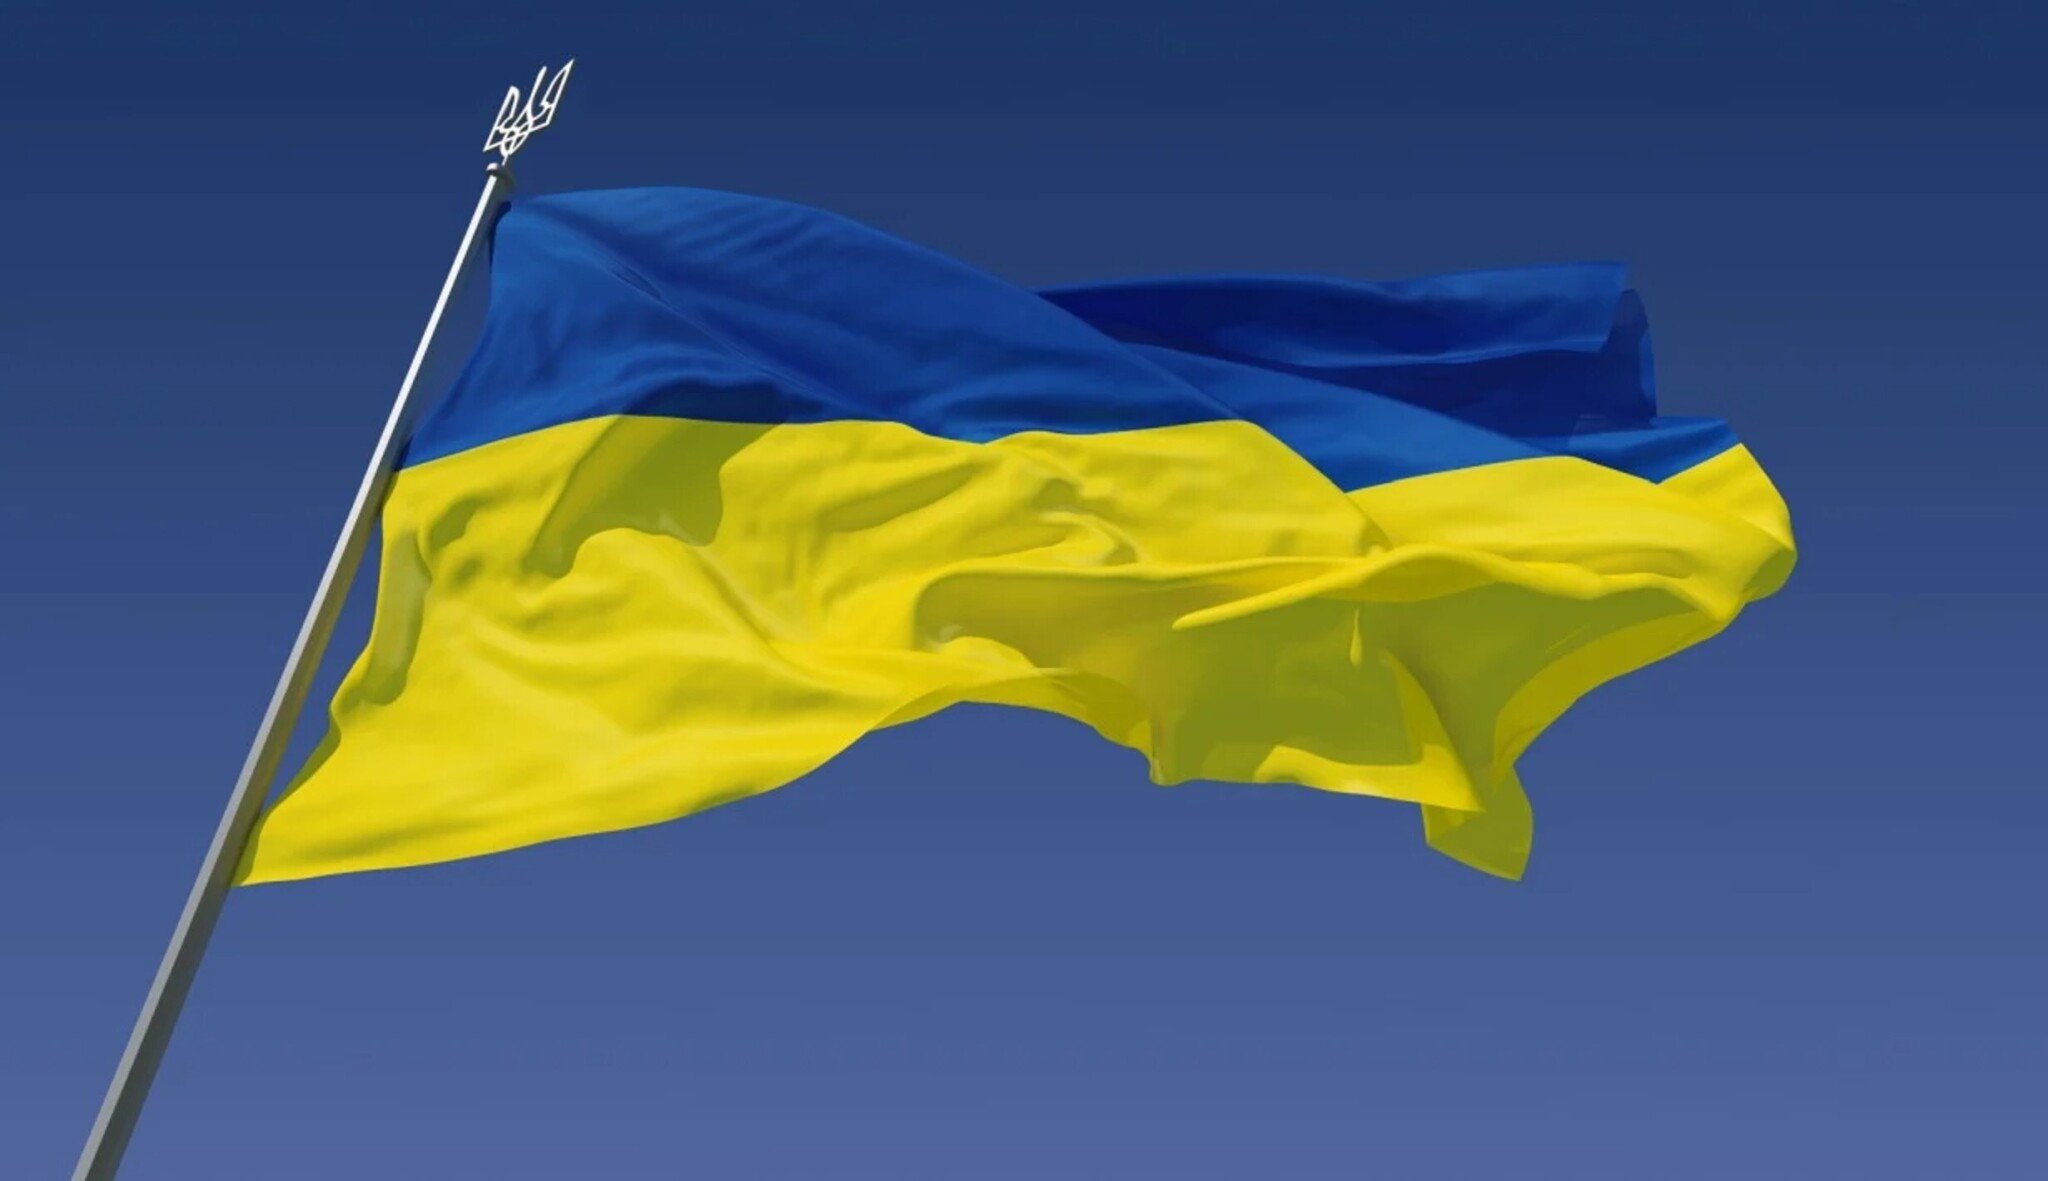 Ukrajina vrací úder. Protiofenziva hlásí první úspěchy